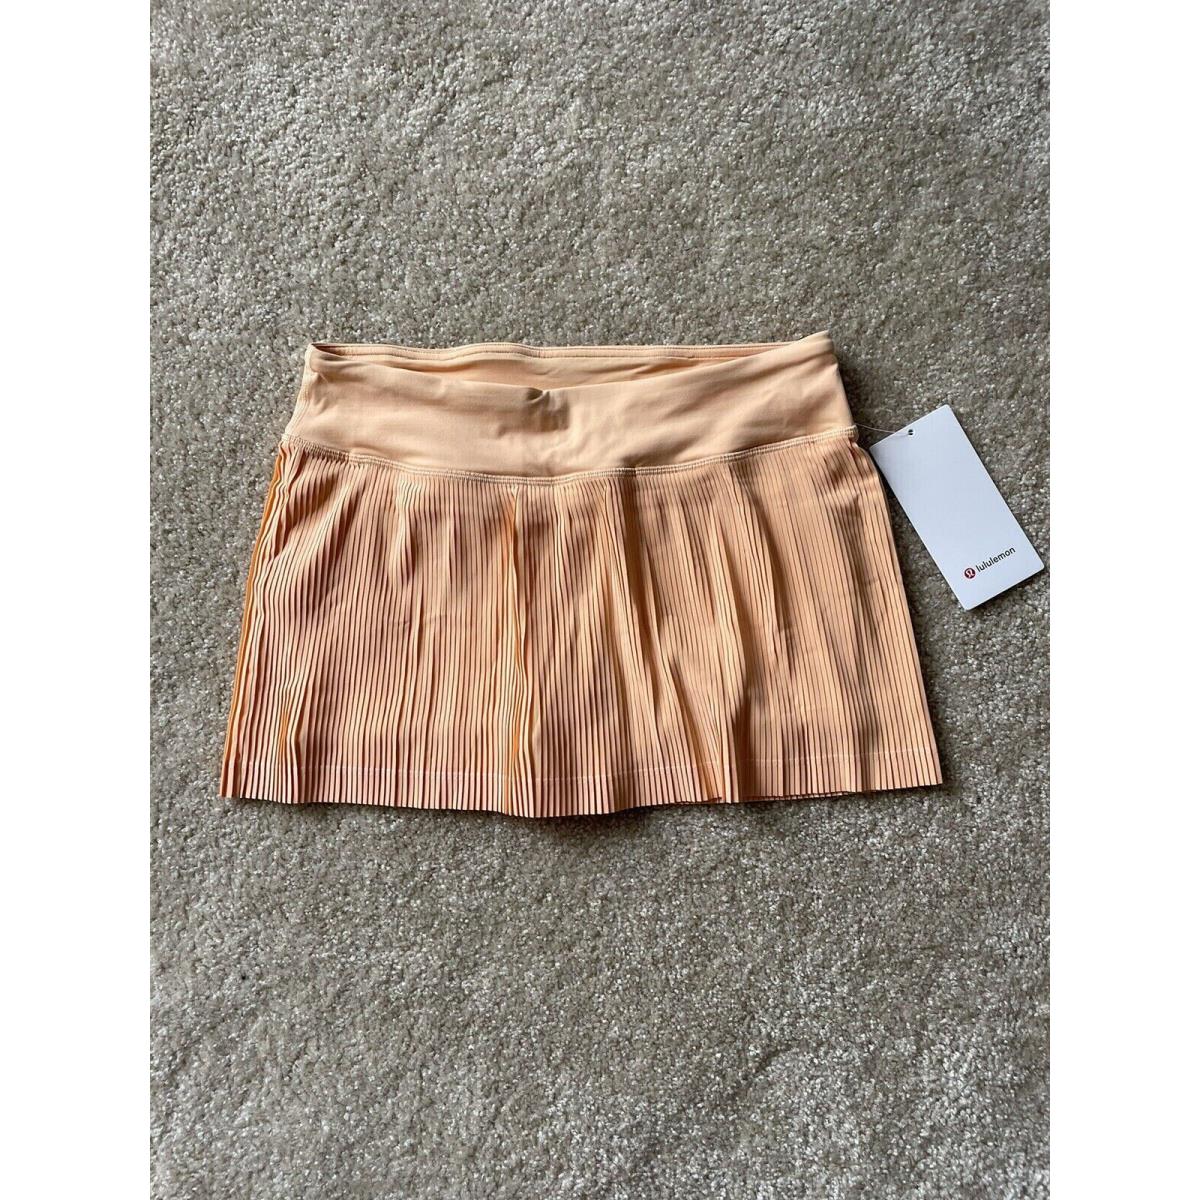 Lululemon Pleat To Street Skirt Mid Rise Sumg Orange Sz 10